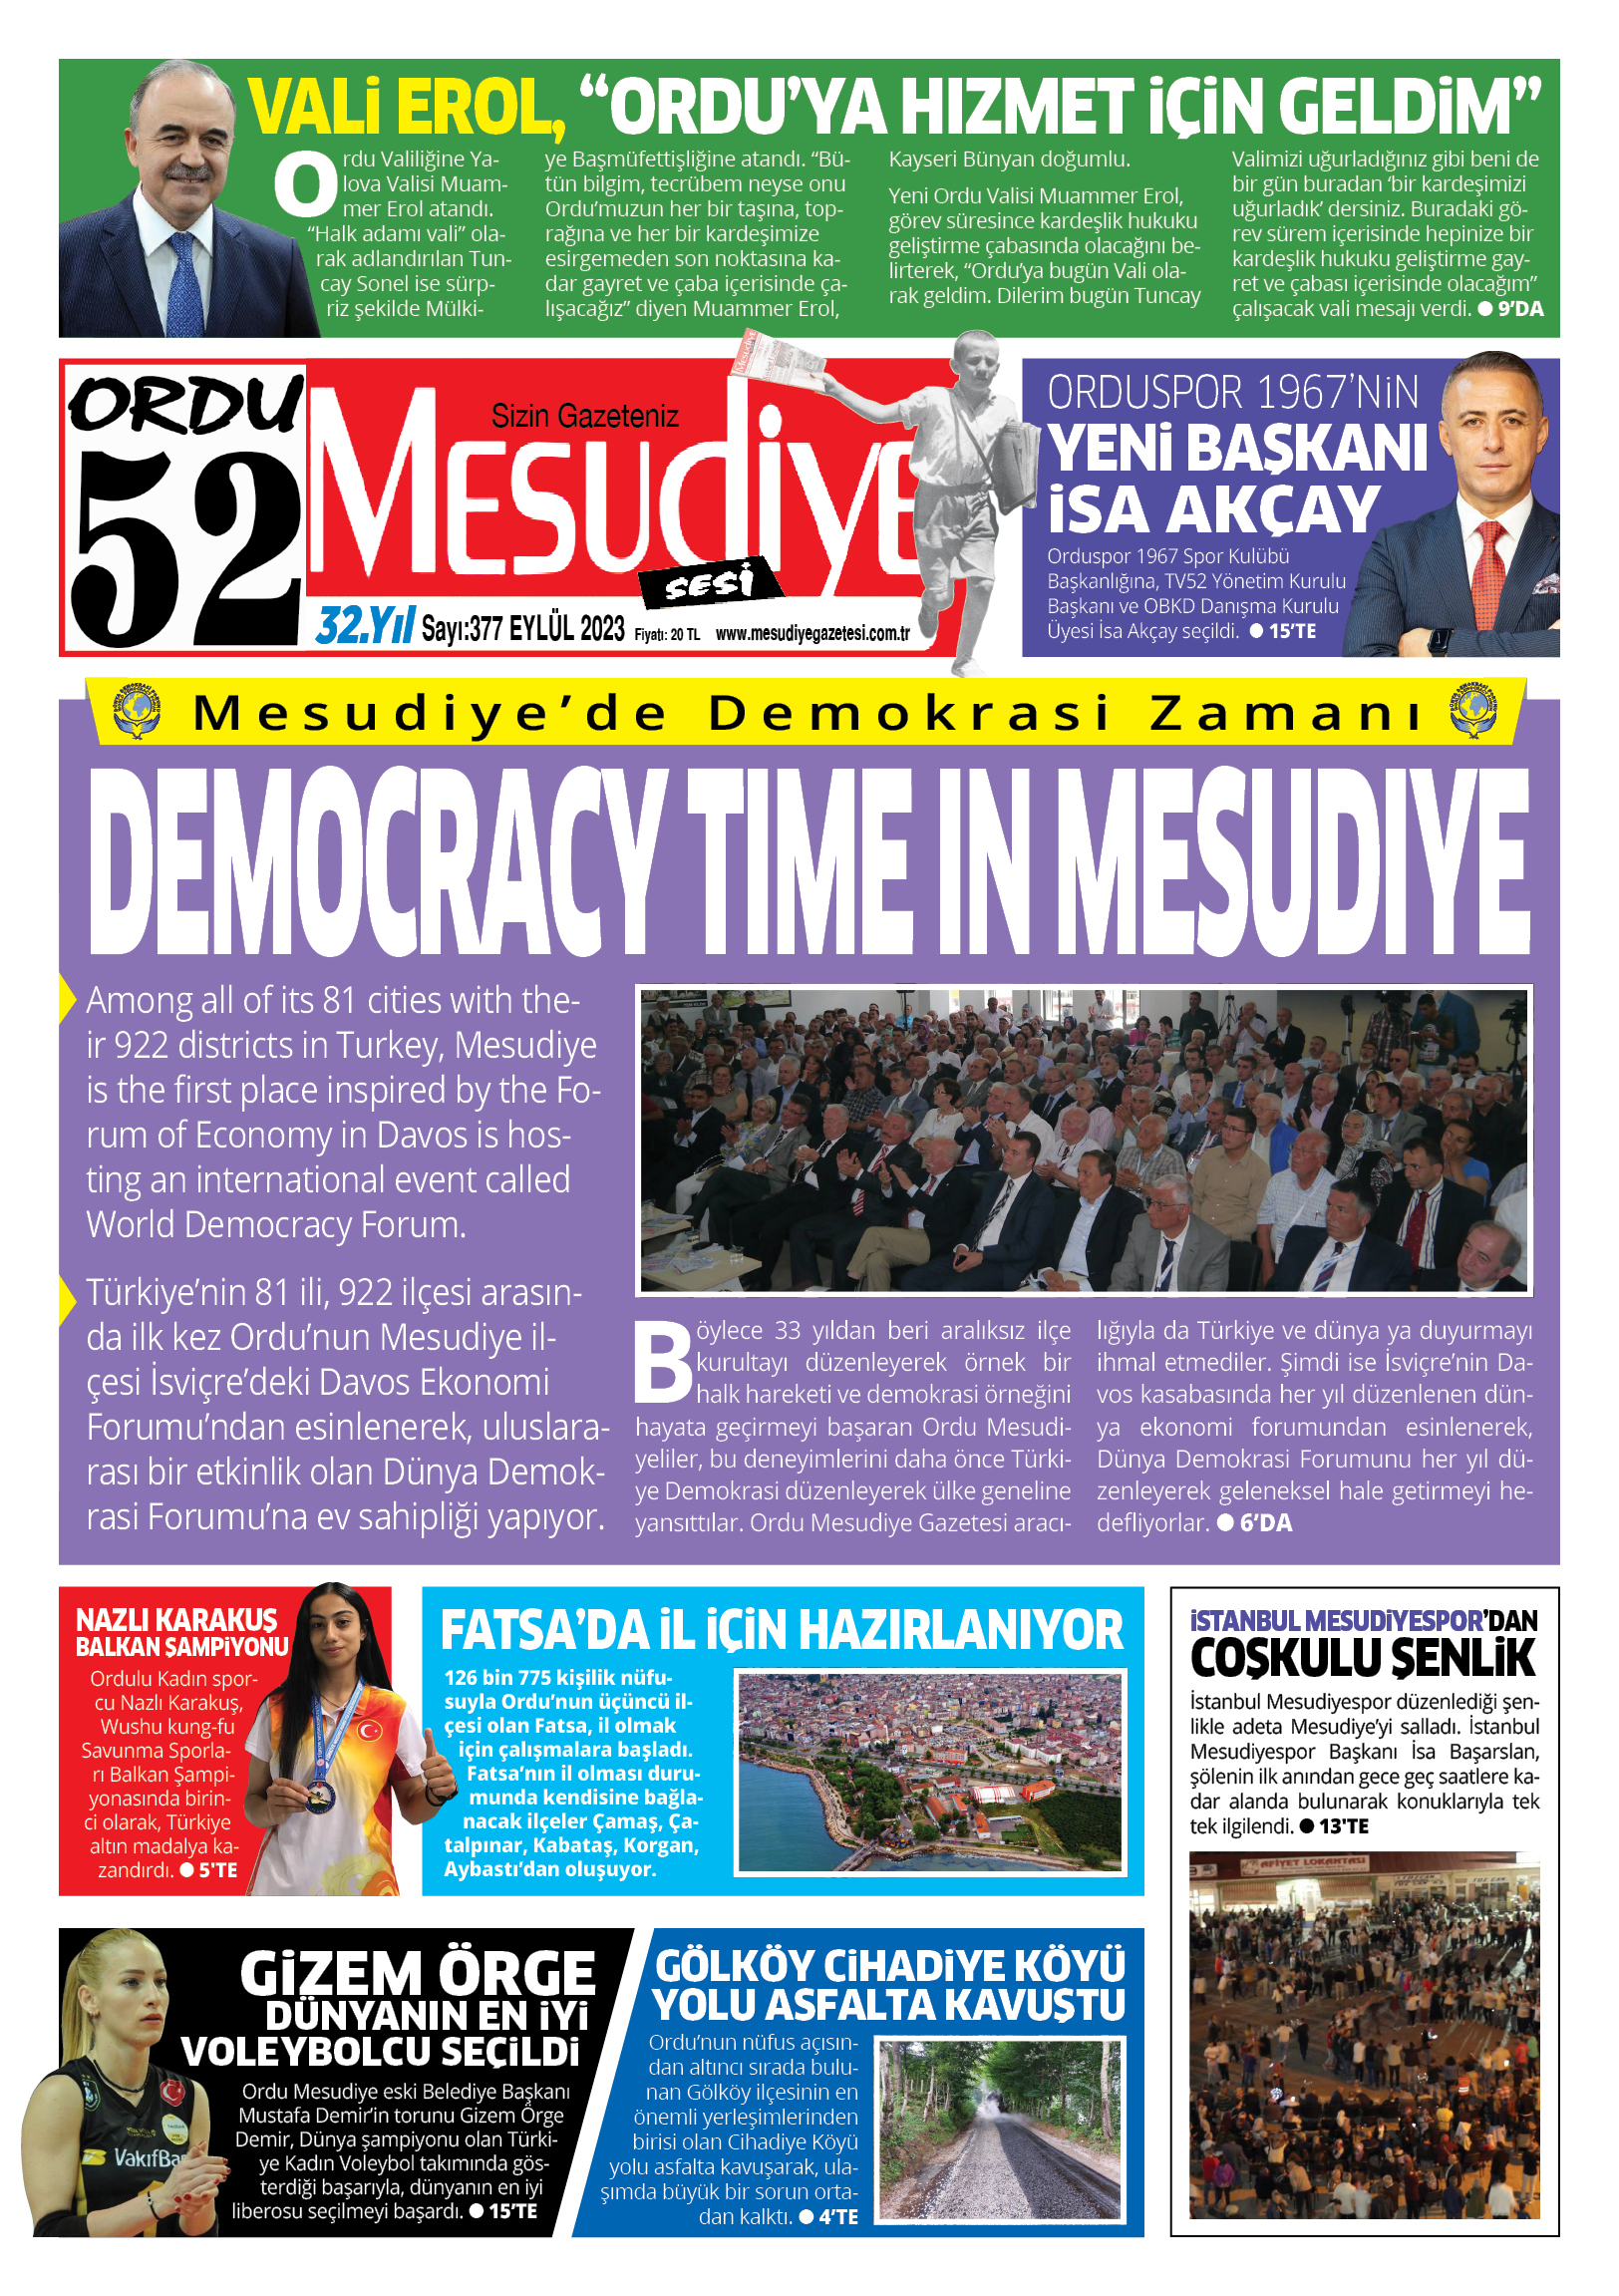 DEMOCRACY TIME IN MESUDIYE